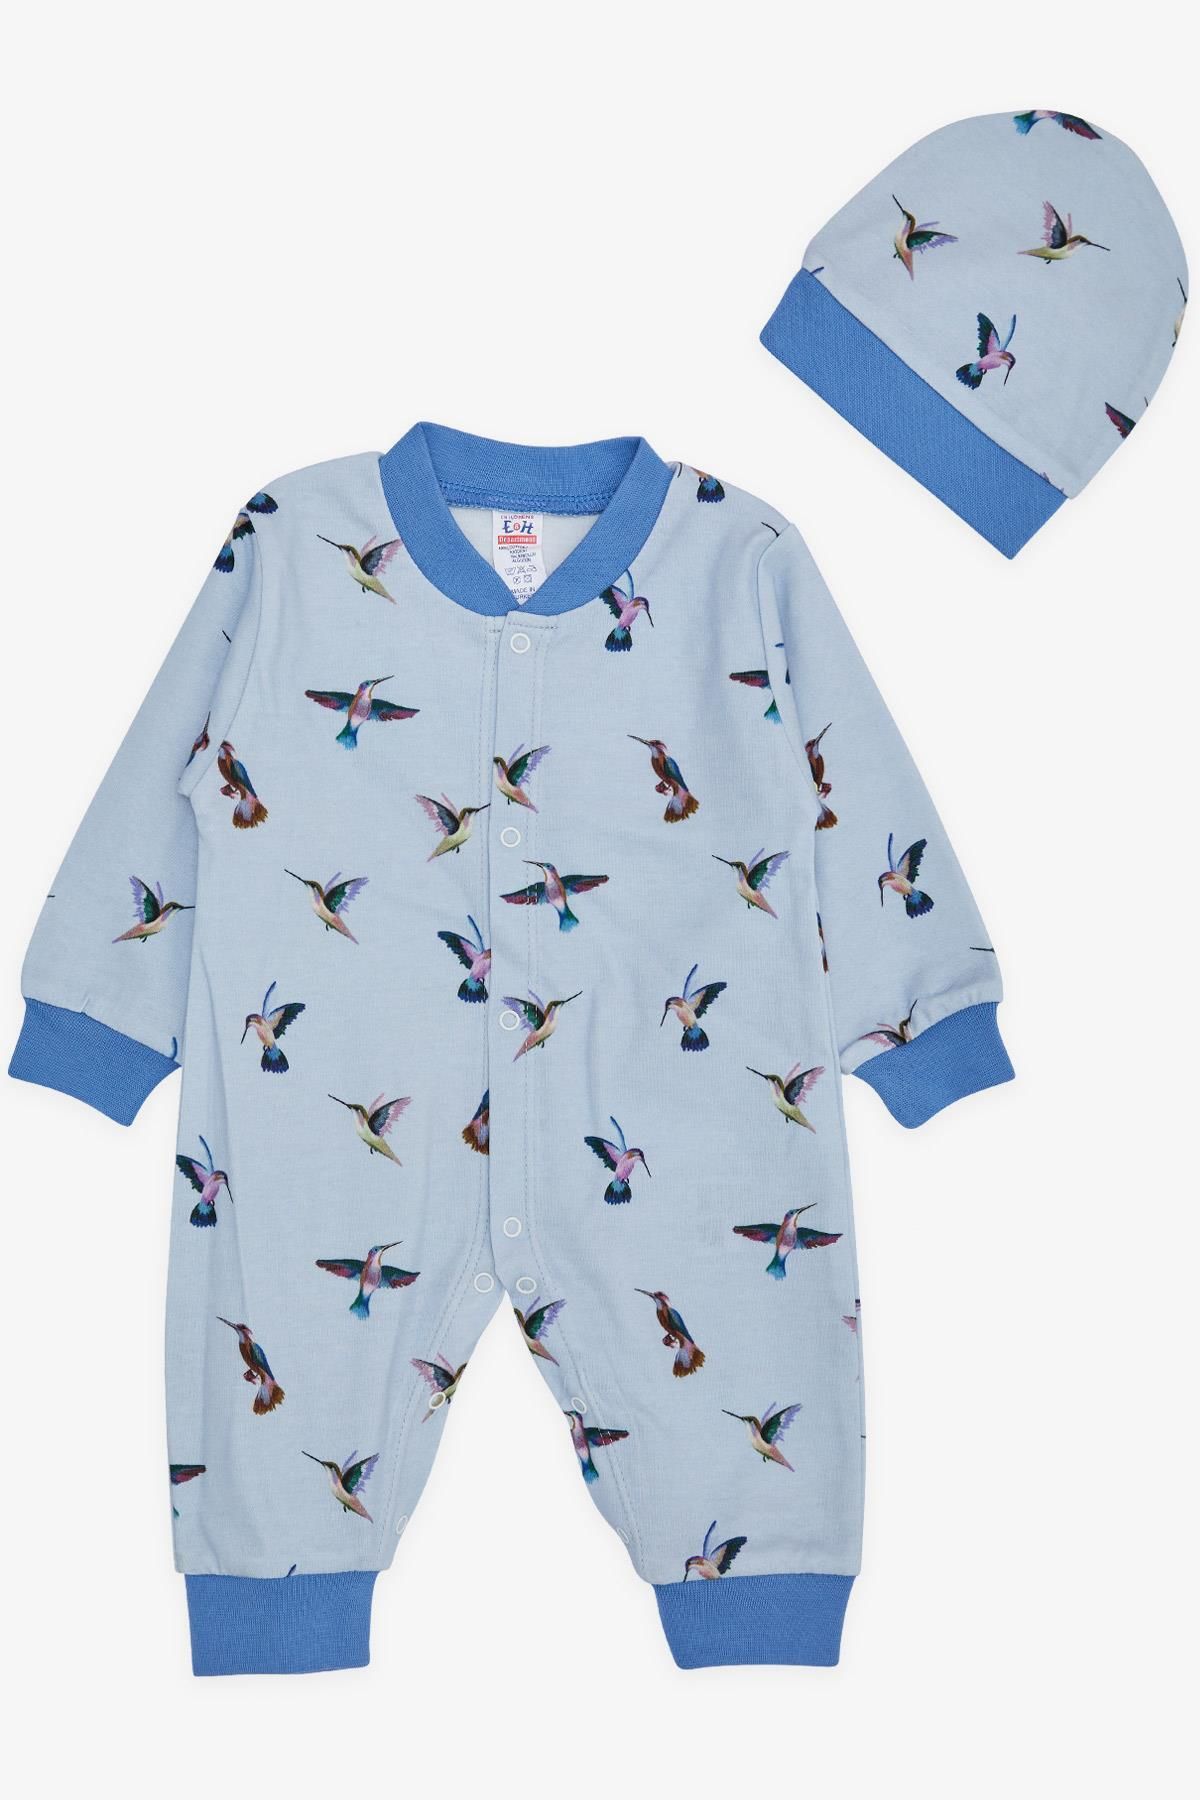 Breeze Erkek Bebek Tulum Sevimli Kuş Desenli 0-6 Ay, Açık Mavi